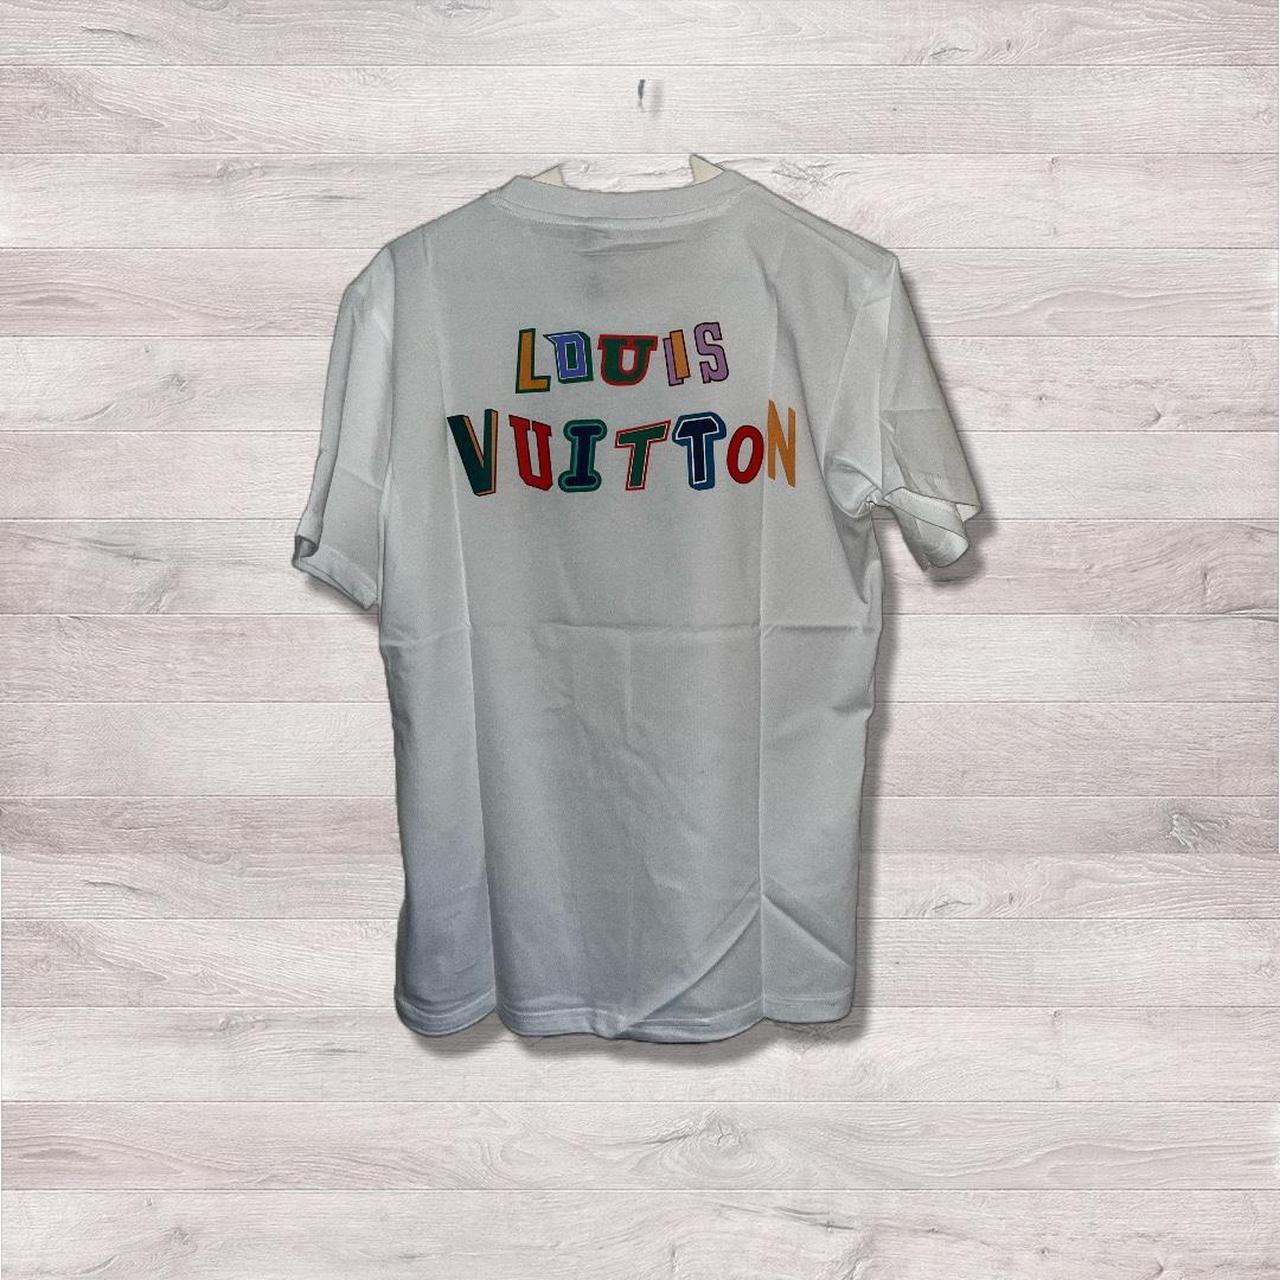 Louis Vuitton Tie Dye Shirt Size Medium Brand New - Depop